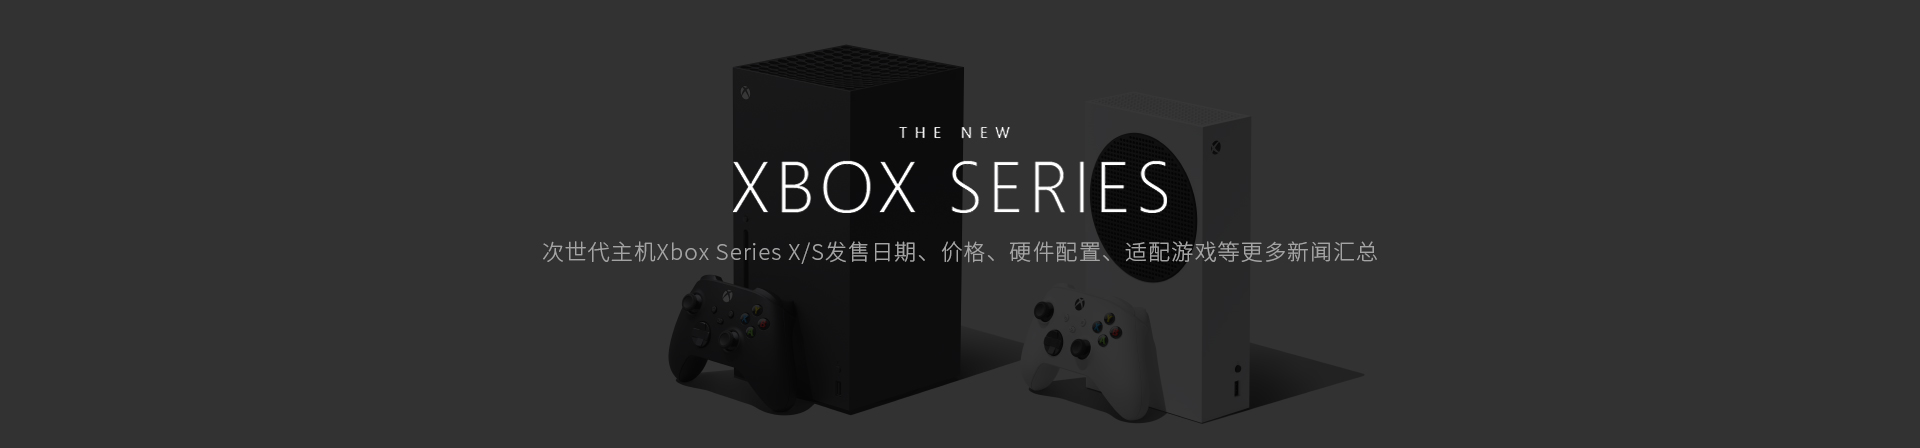 微软次世代主机Xbox Series X/S发售日期、价格、硬件配置、适配游戏等XSX新闻汇总-篝火营地